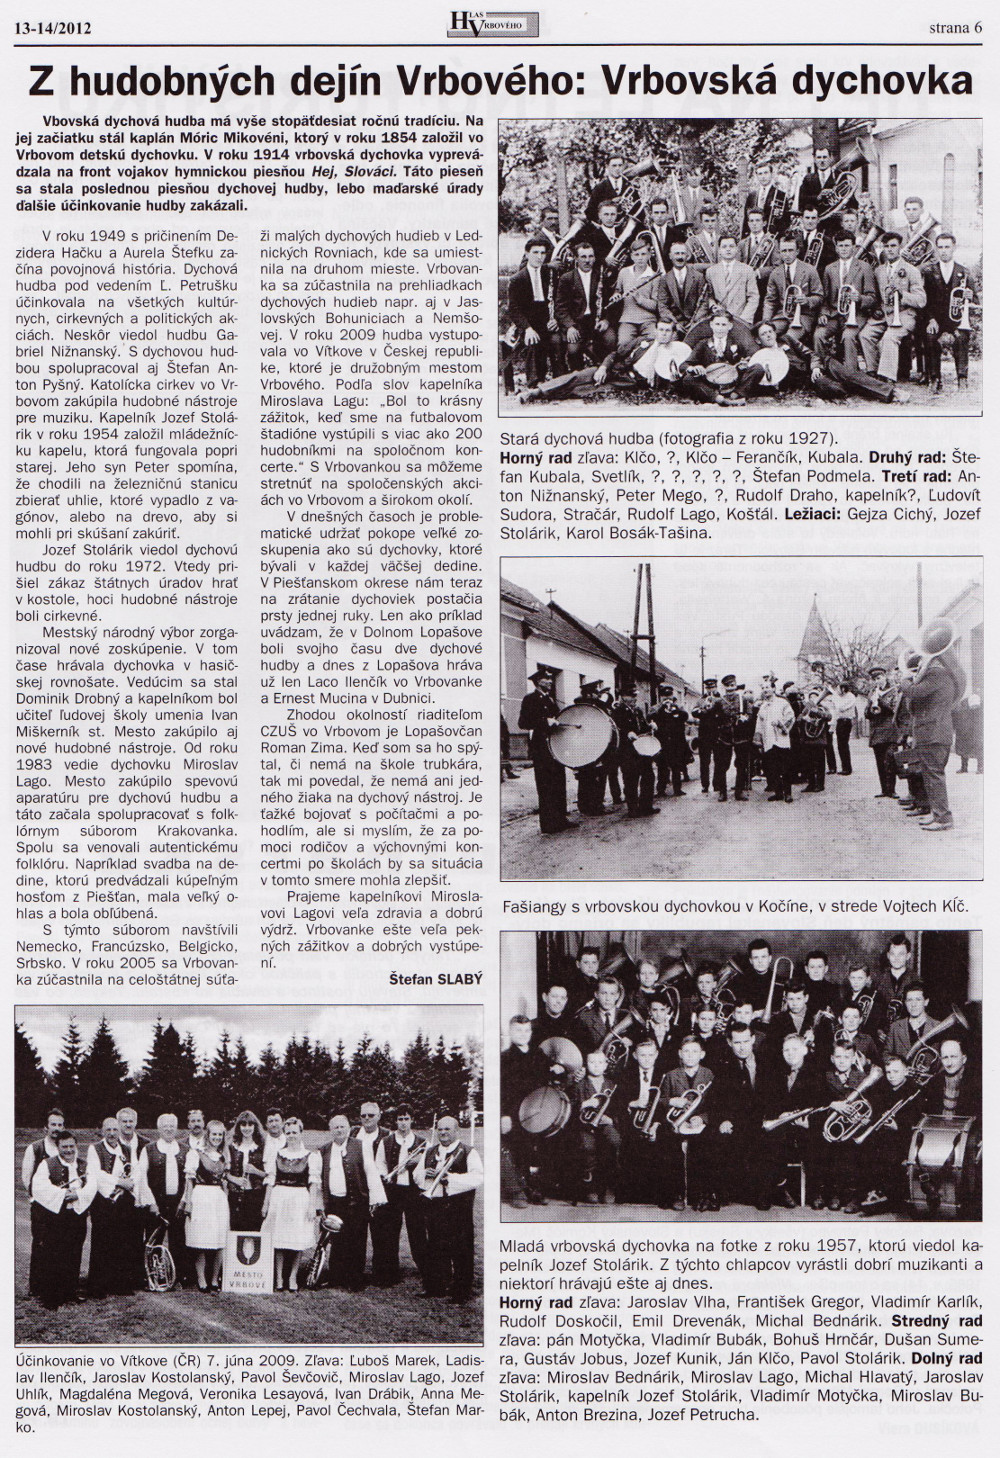 Hlas Vrbového 13-14/2012, strana 6